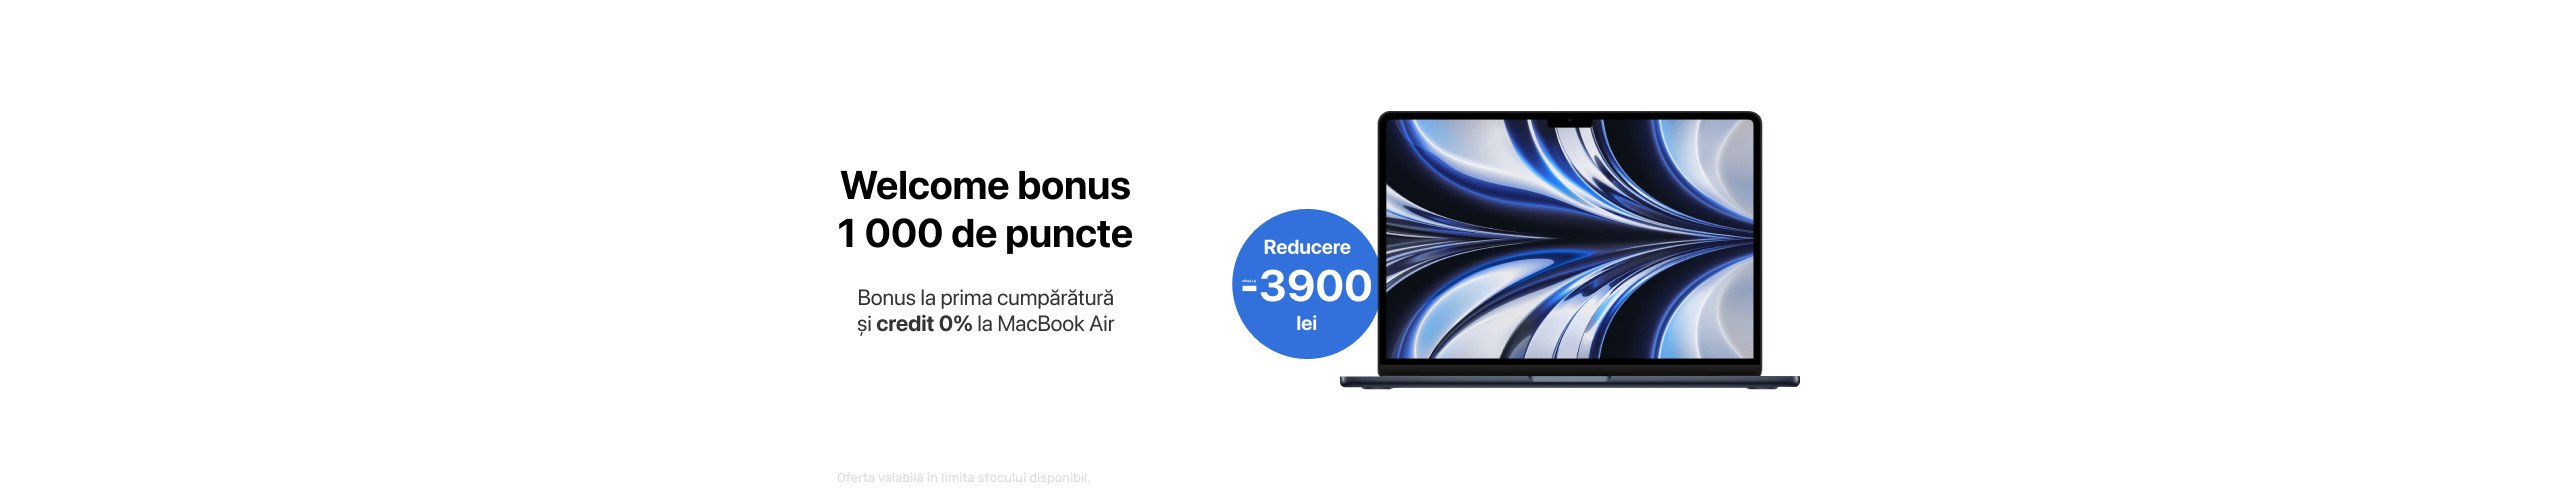 Reducere până la 3 900 lei la MacBook Air!